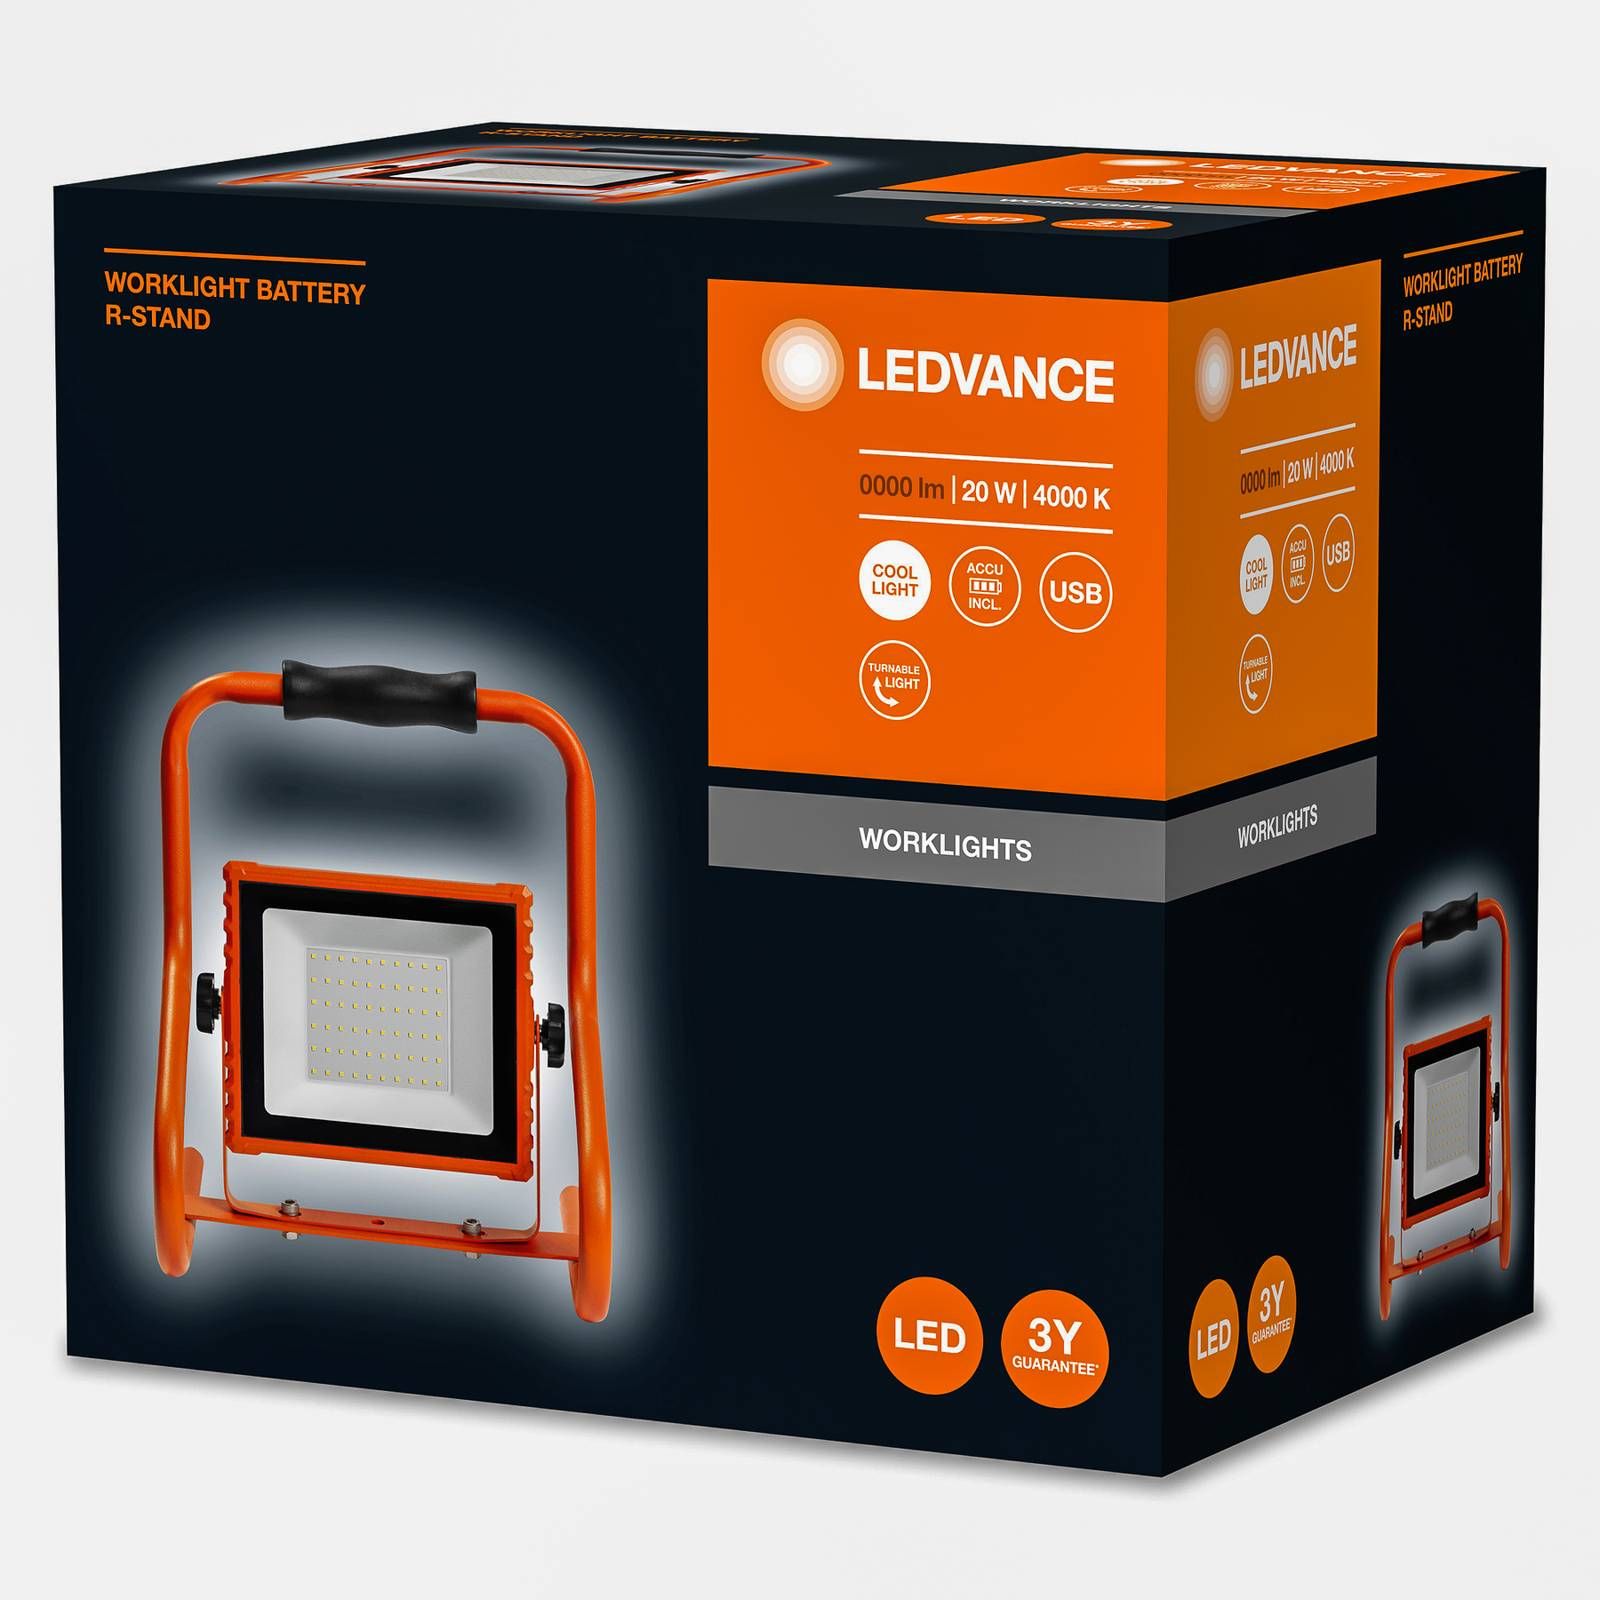 LEDVANCE Worklight Battery pracovné LED svetlo 20W, hliník, polykarbonát, 20W, P: 20 cm, L: 26.6 cm, K: 27.6cm